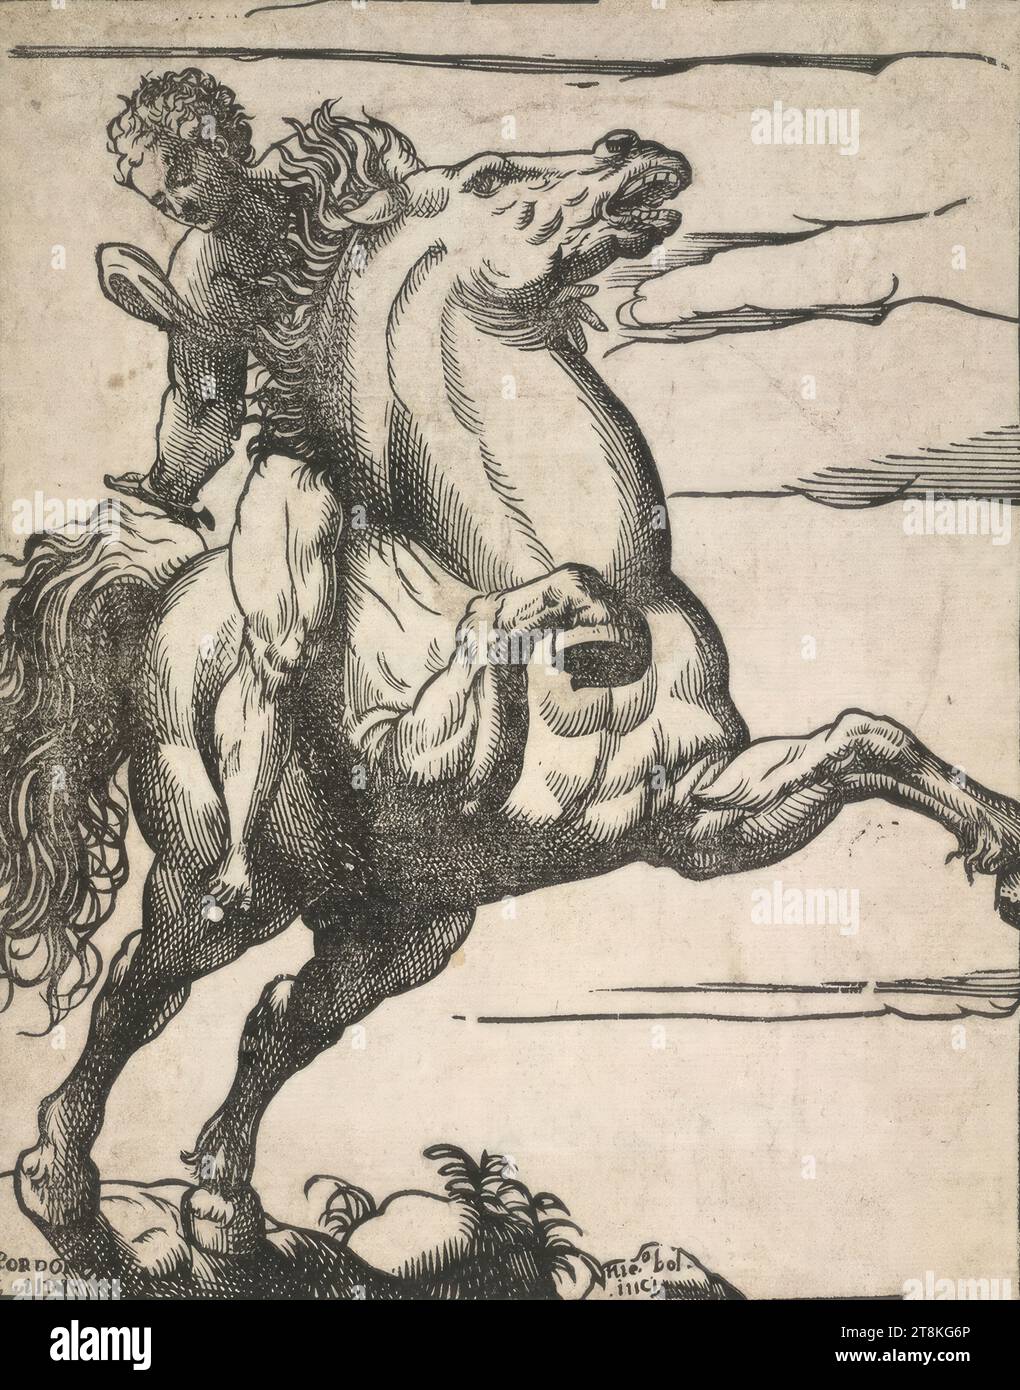 Le coureur, Niccolò Boldrini, Italie, adulte 1540/1549, /1566 - 1566, 2e tiers du 16e siècle, estampe, gravure sur bois, feuille : 23,2 x 19 cm Banque D'Images